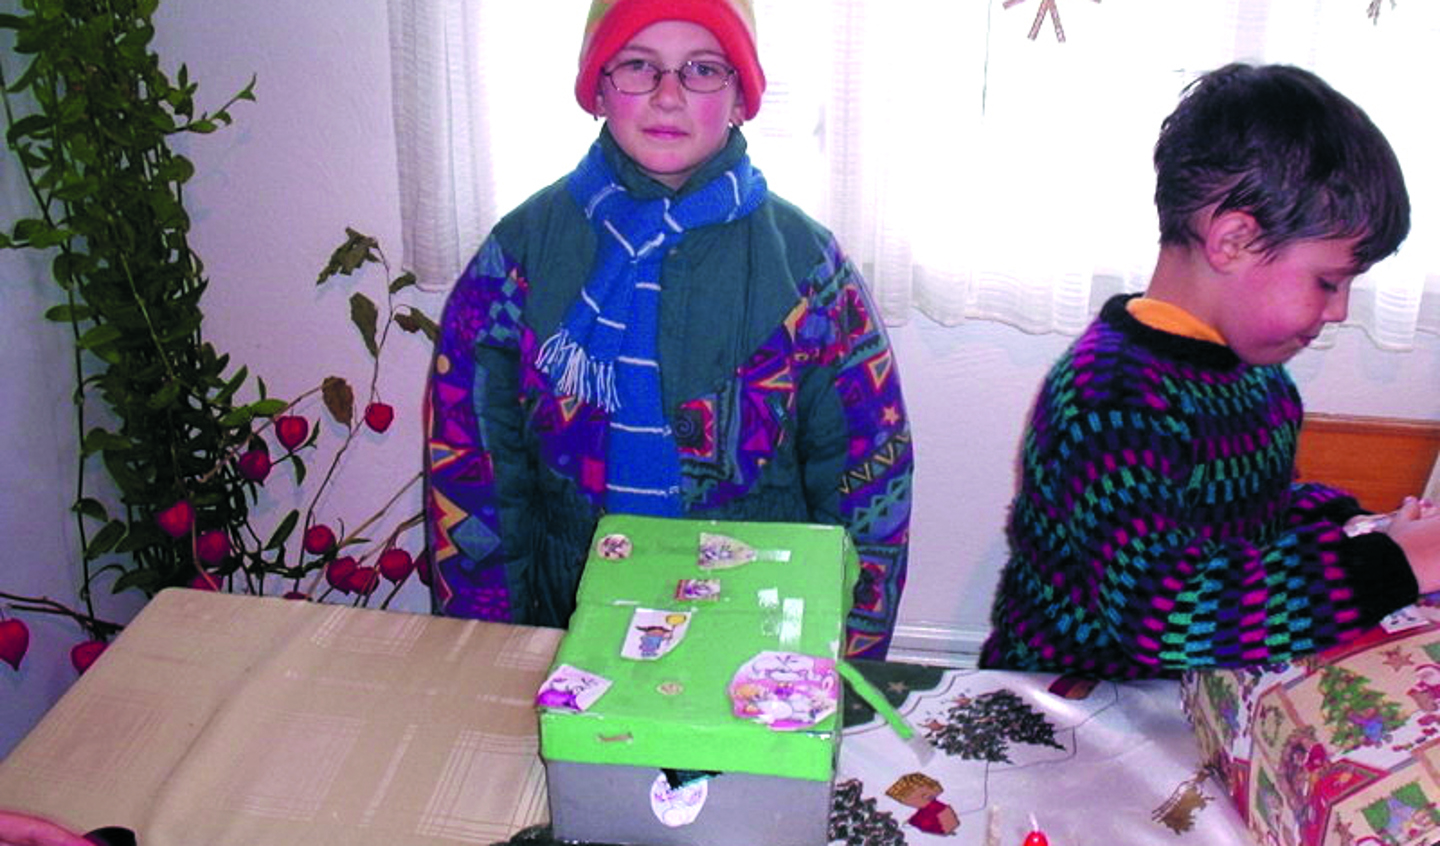 De kinderen in Roemenïe worden wederom verblijd met leuke cadeautjes in schoenendozen. (Foto's: aangeleverd)